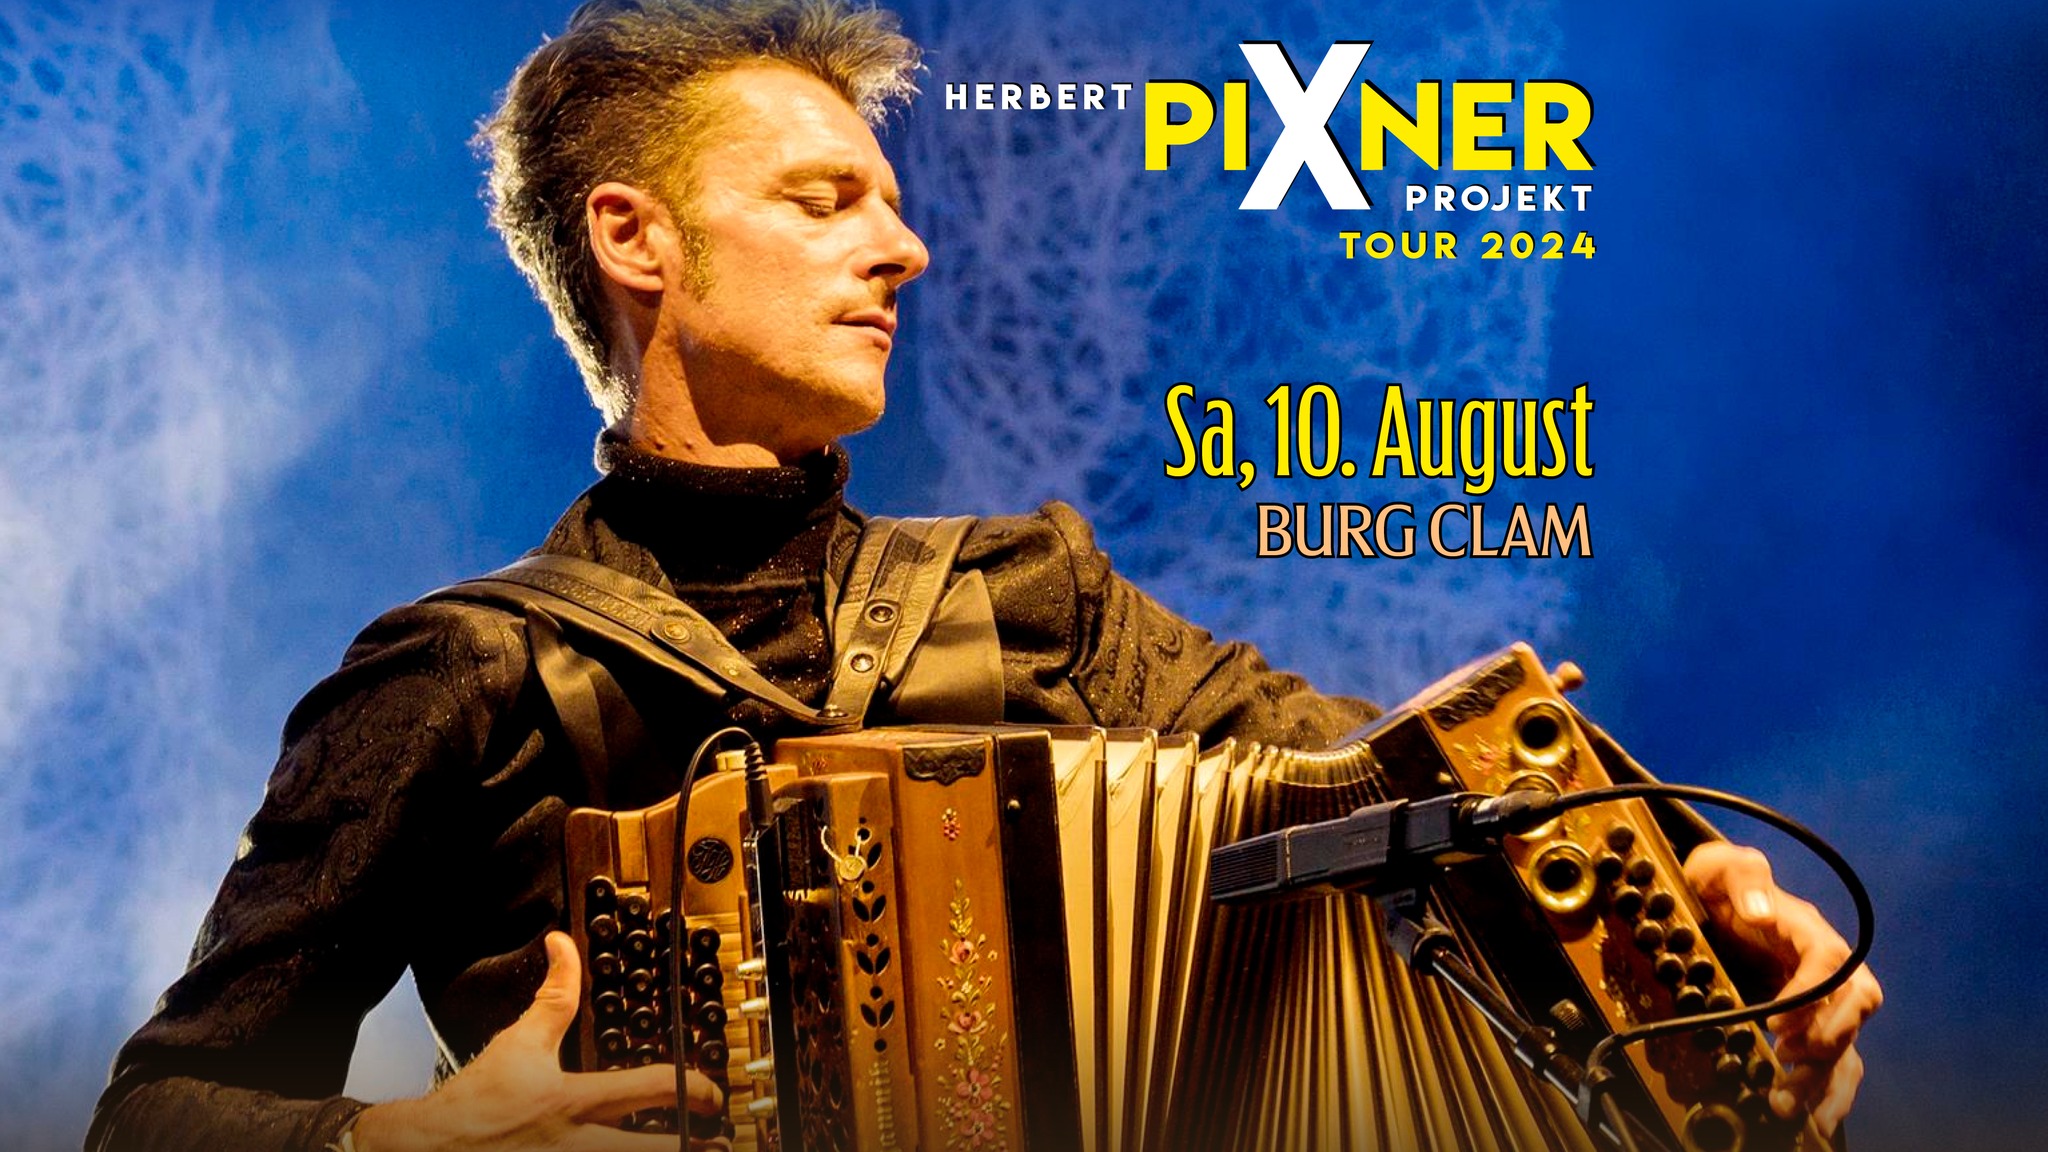 Herbert Pixner Projekt am 10. August 2024 @ Burg Clam.